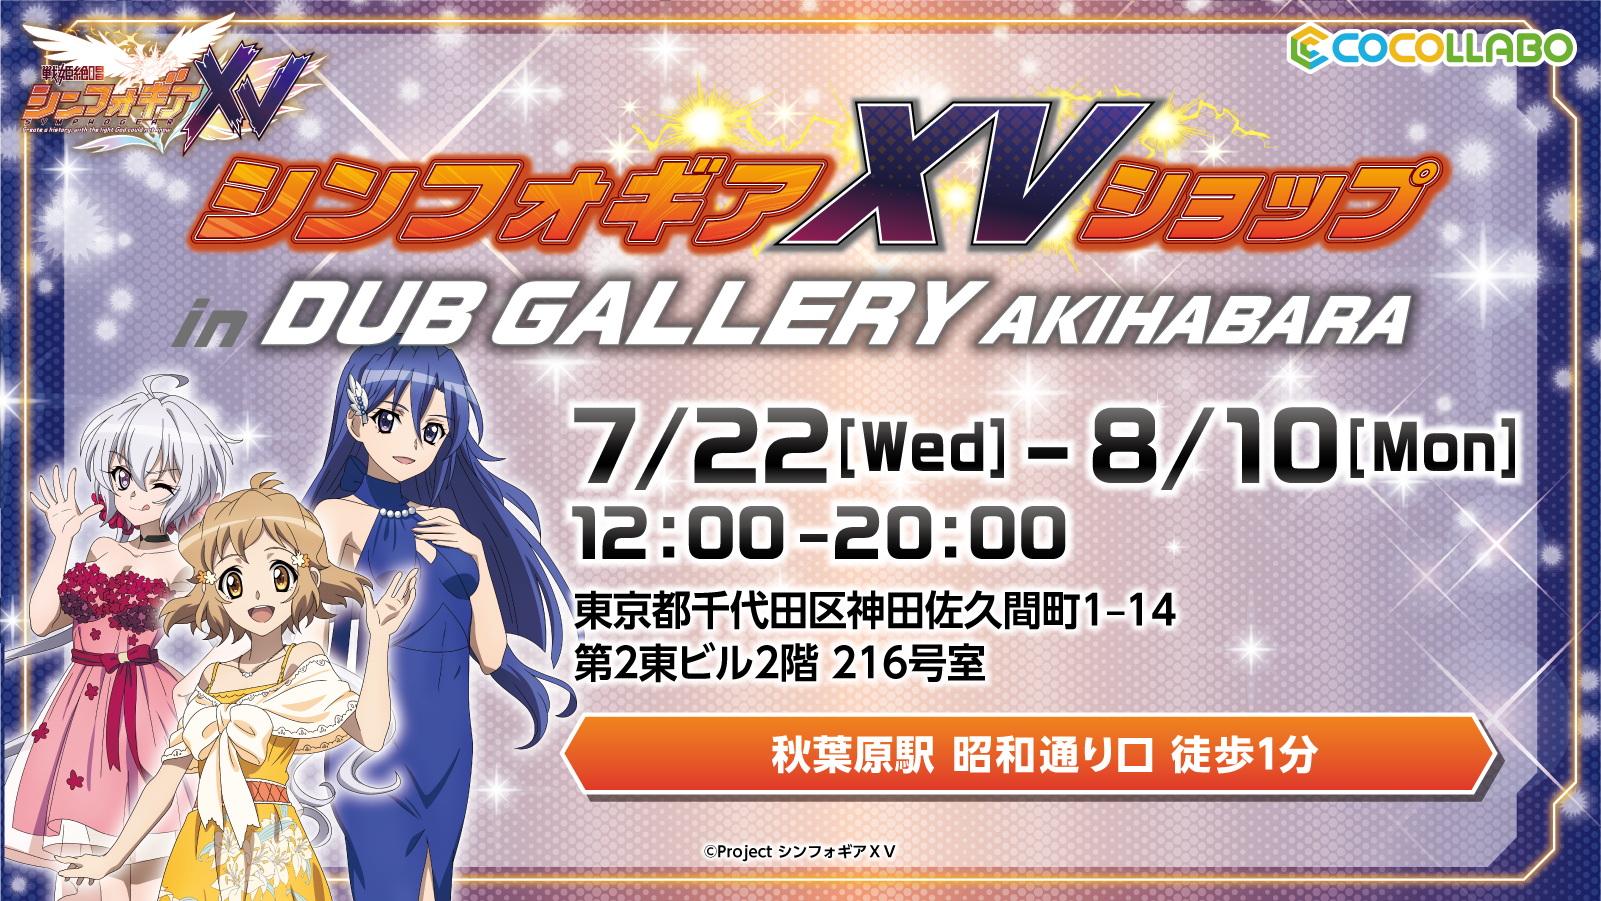 戦姫絶唱シンフォギアｘｖ を記念したオンリーショップが Dub Gallery Akihabara にて7月22日 水 より開催 インディー